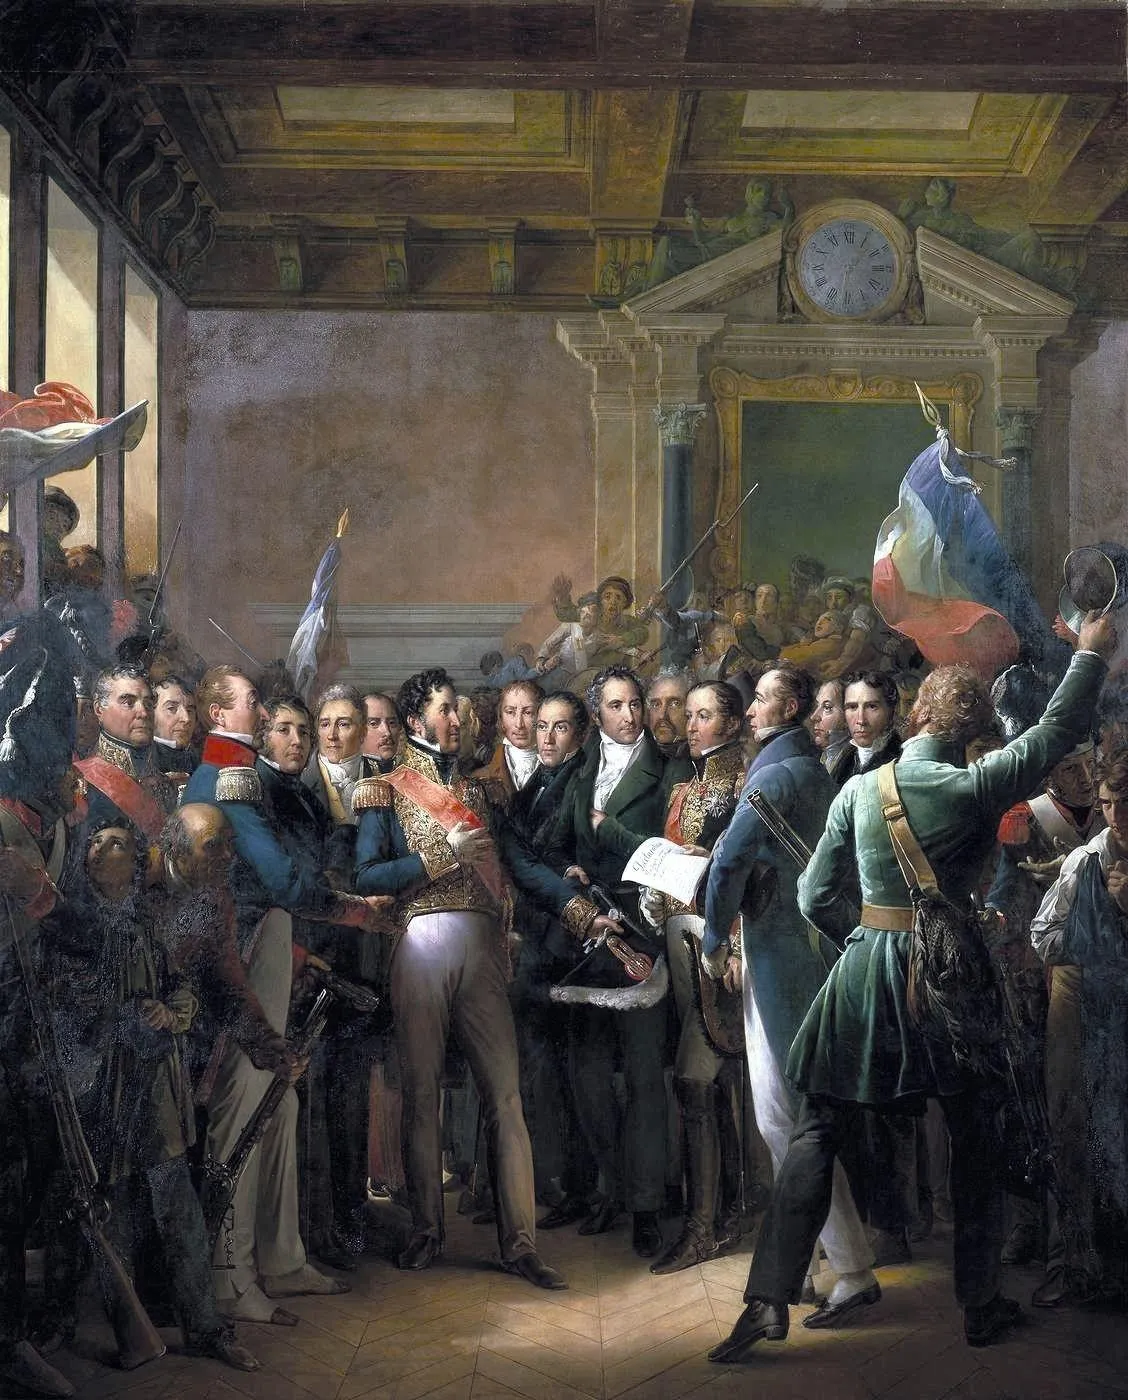 François Gérard, Lecture de la déclaration des députés proclamant le duc, 1836,
huile sur toile (détail), 550 x 442 cm, musée du Château de Versailles.